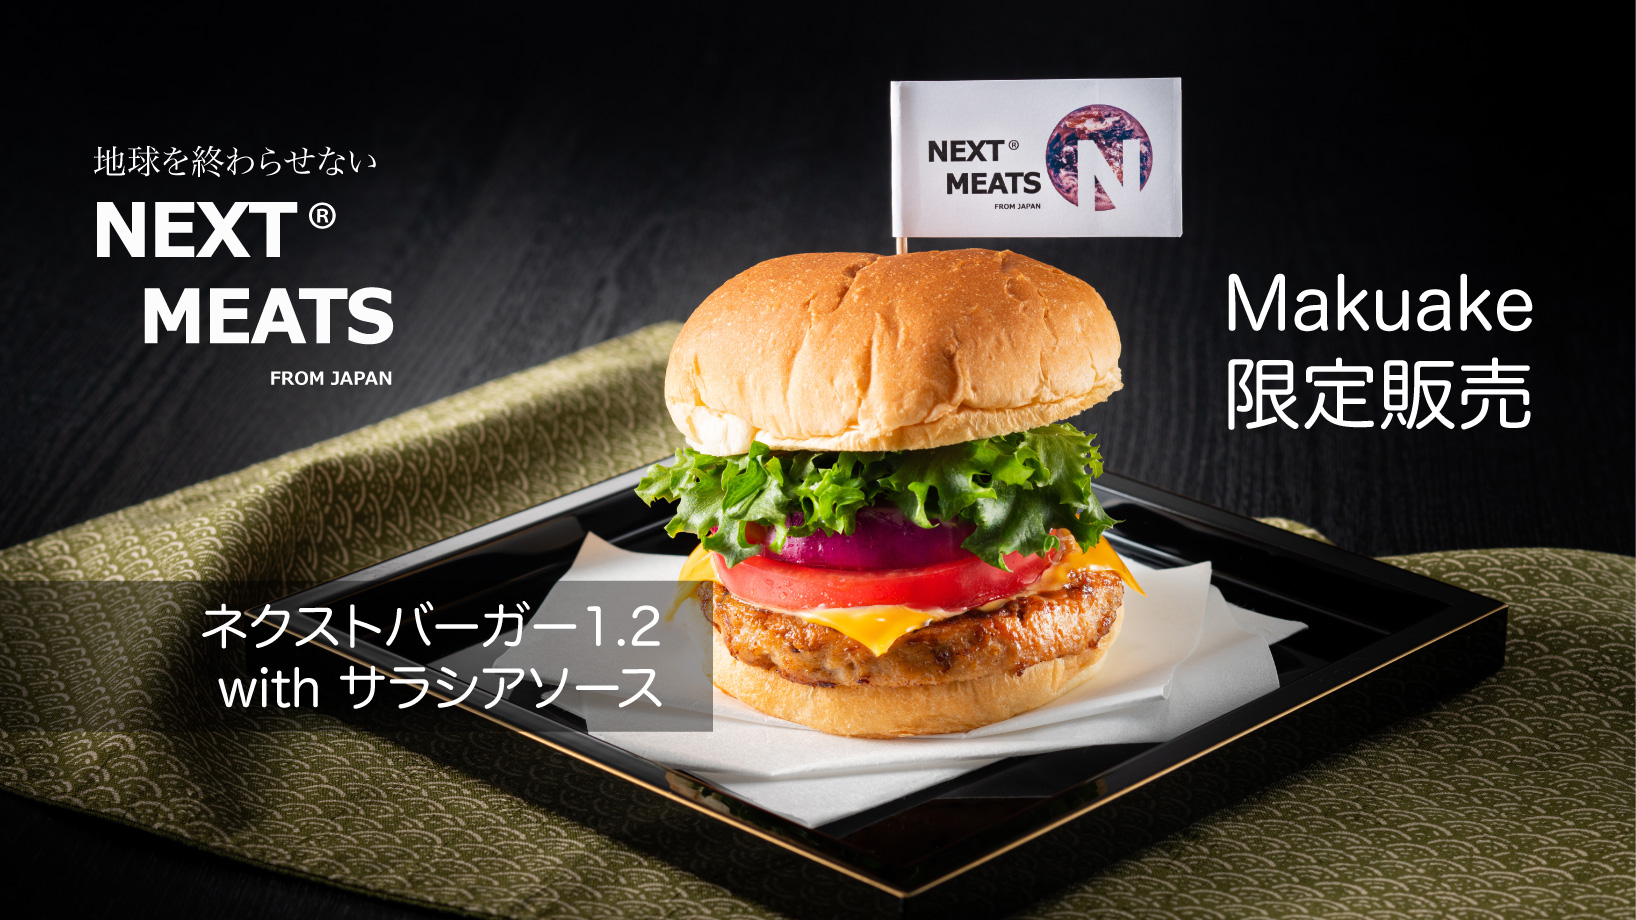 完全日本製のフェイクミートハンバーガー ネクストバーガー1 2 のクラウドファンディングがスタート Engadget 日本版